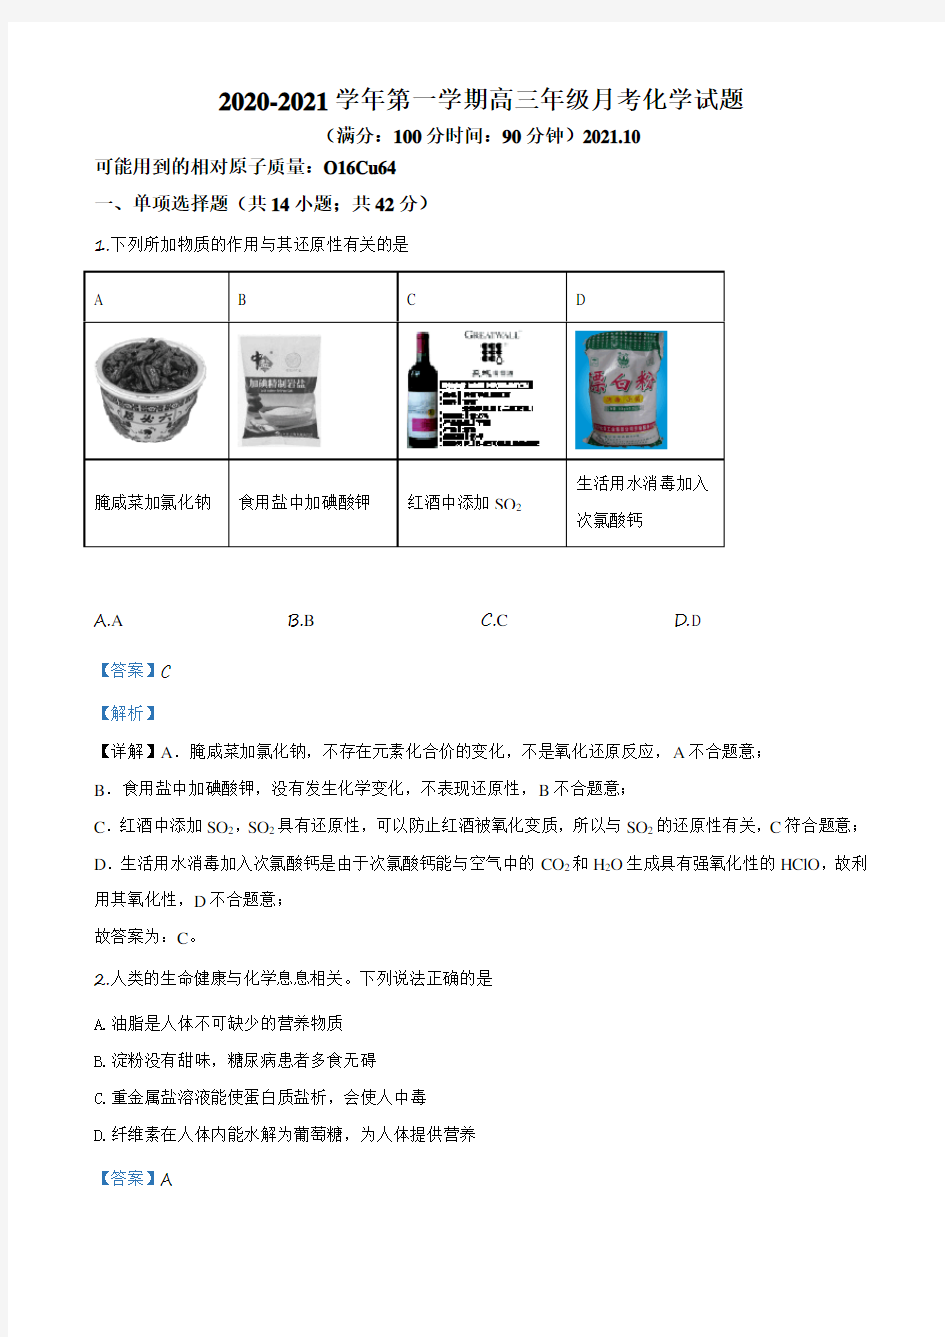 新人教版_2020-2021学年北京市人大附中高三(上)月考化学试卷(10月份)